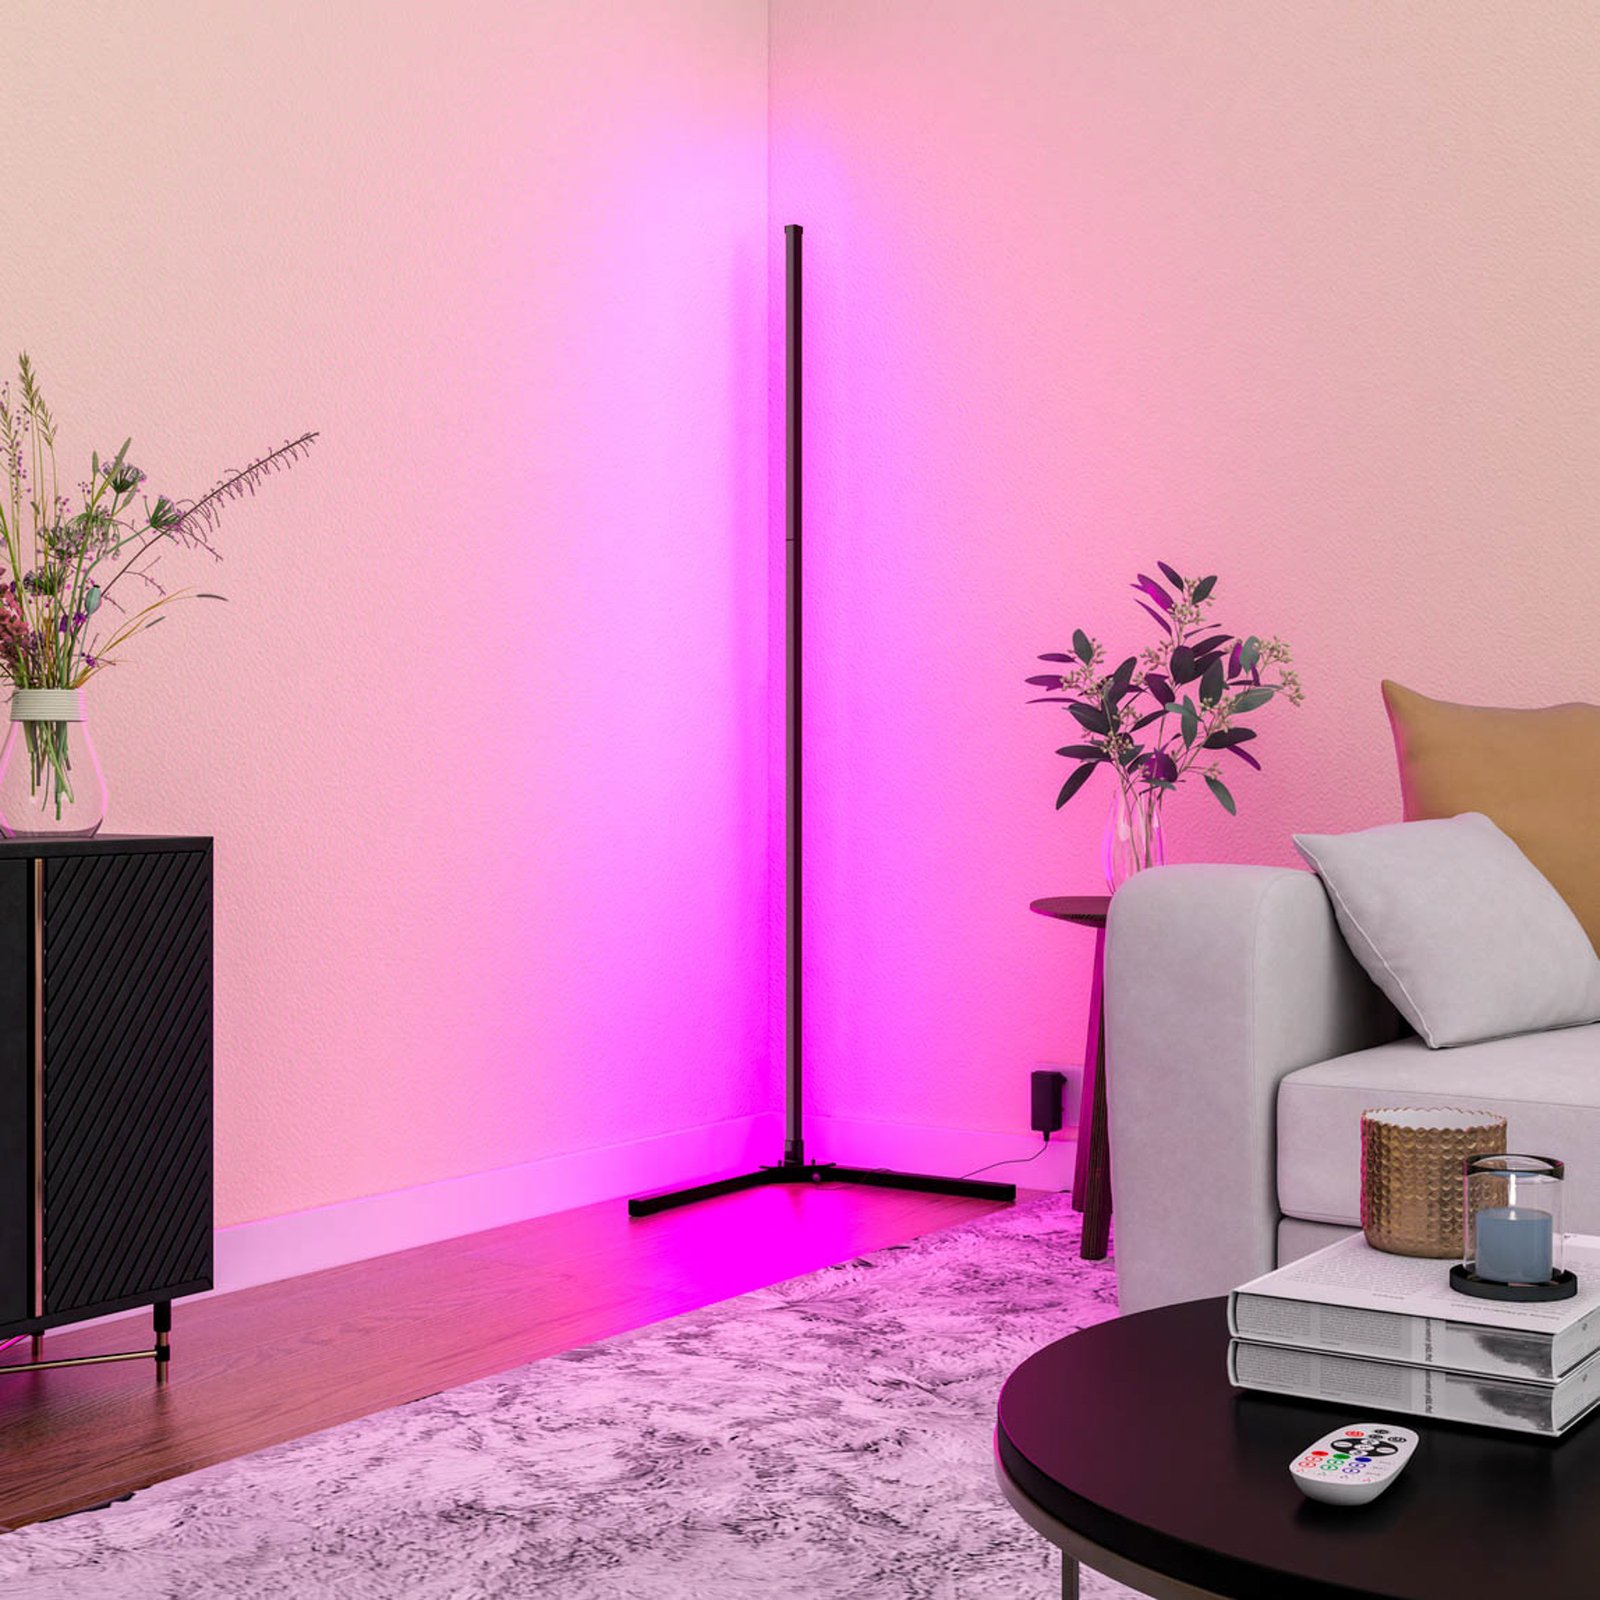 Calex Smart LED-golvlampa med fjärrkontroll RGBW